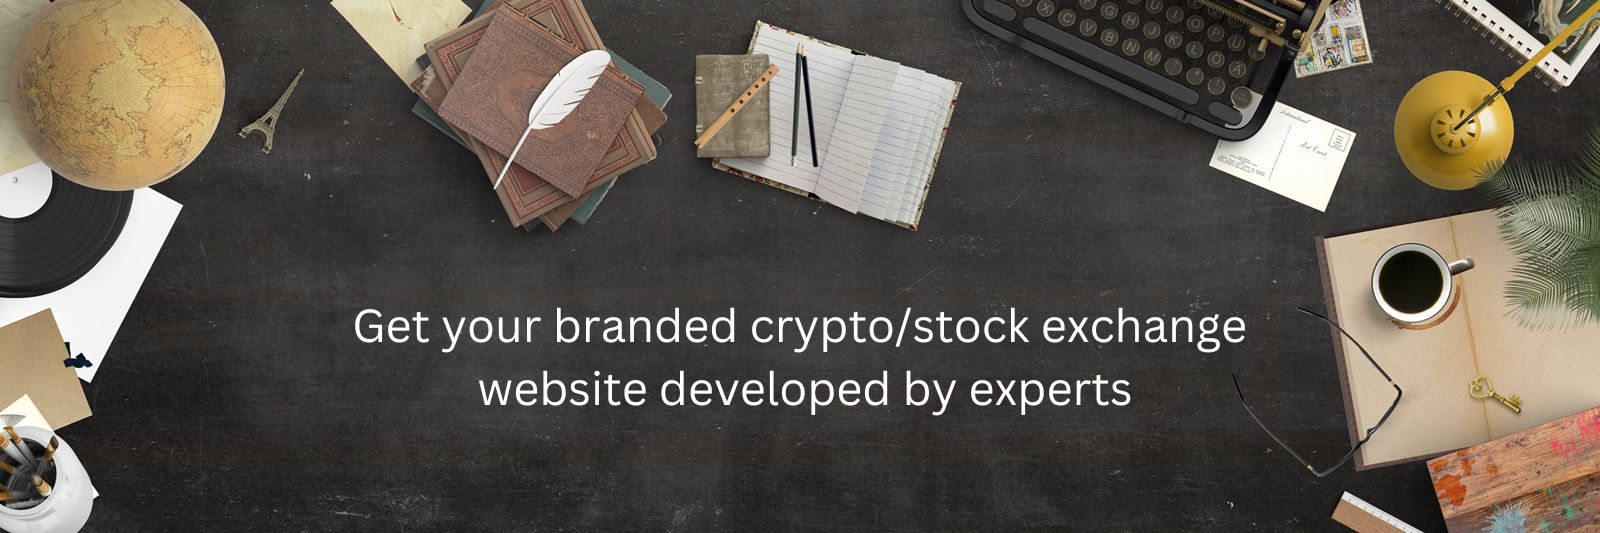 crypto stock exchange website development company india